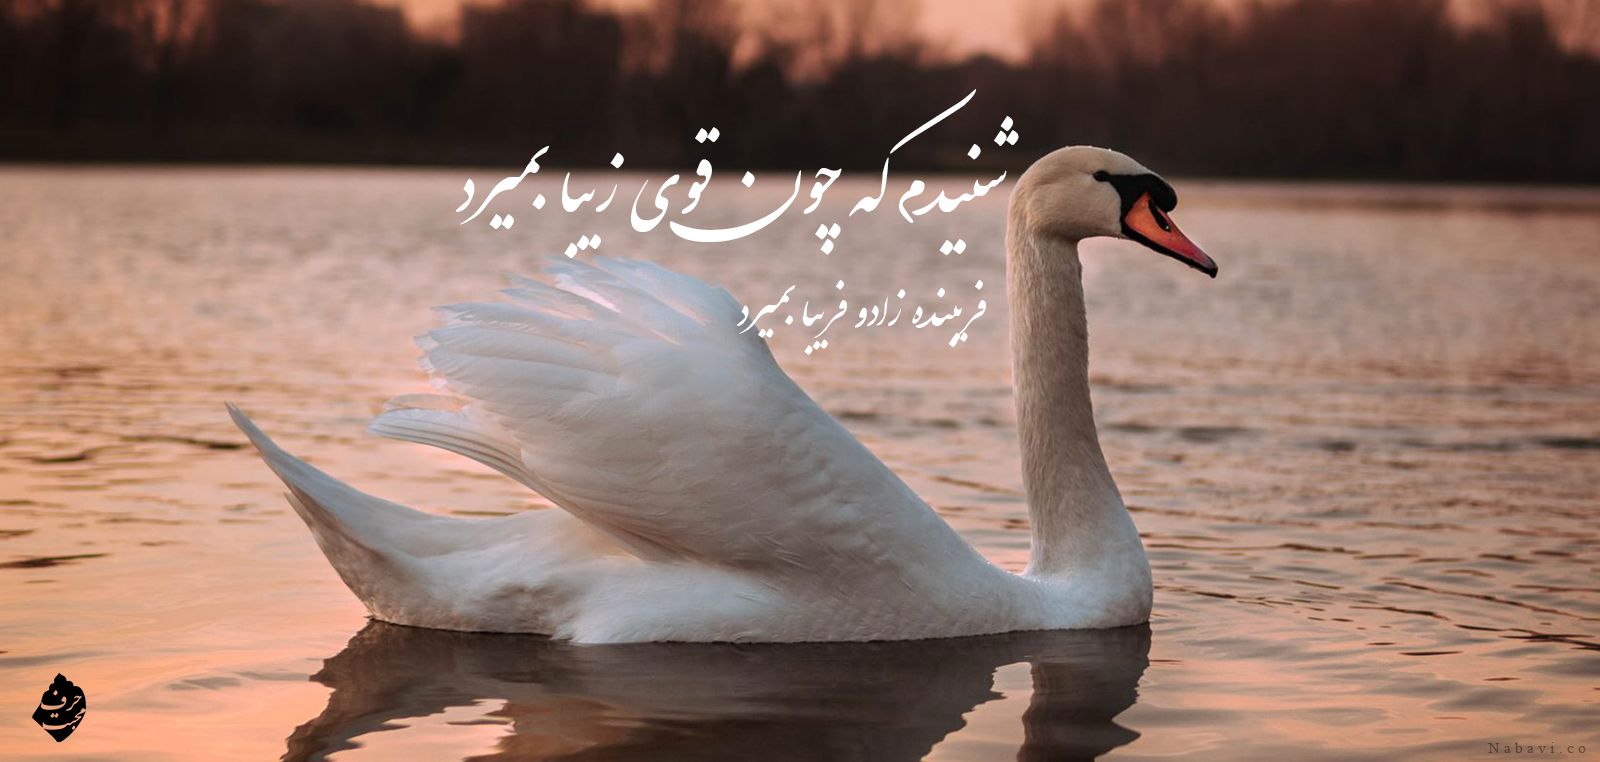 شعر شنیدم که چون قوی زیبا بمیرد - حمیدی شیرازی